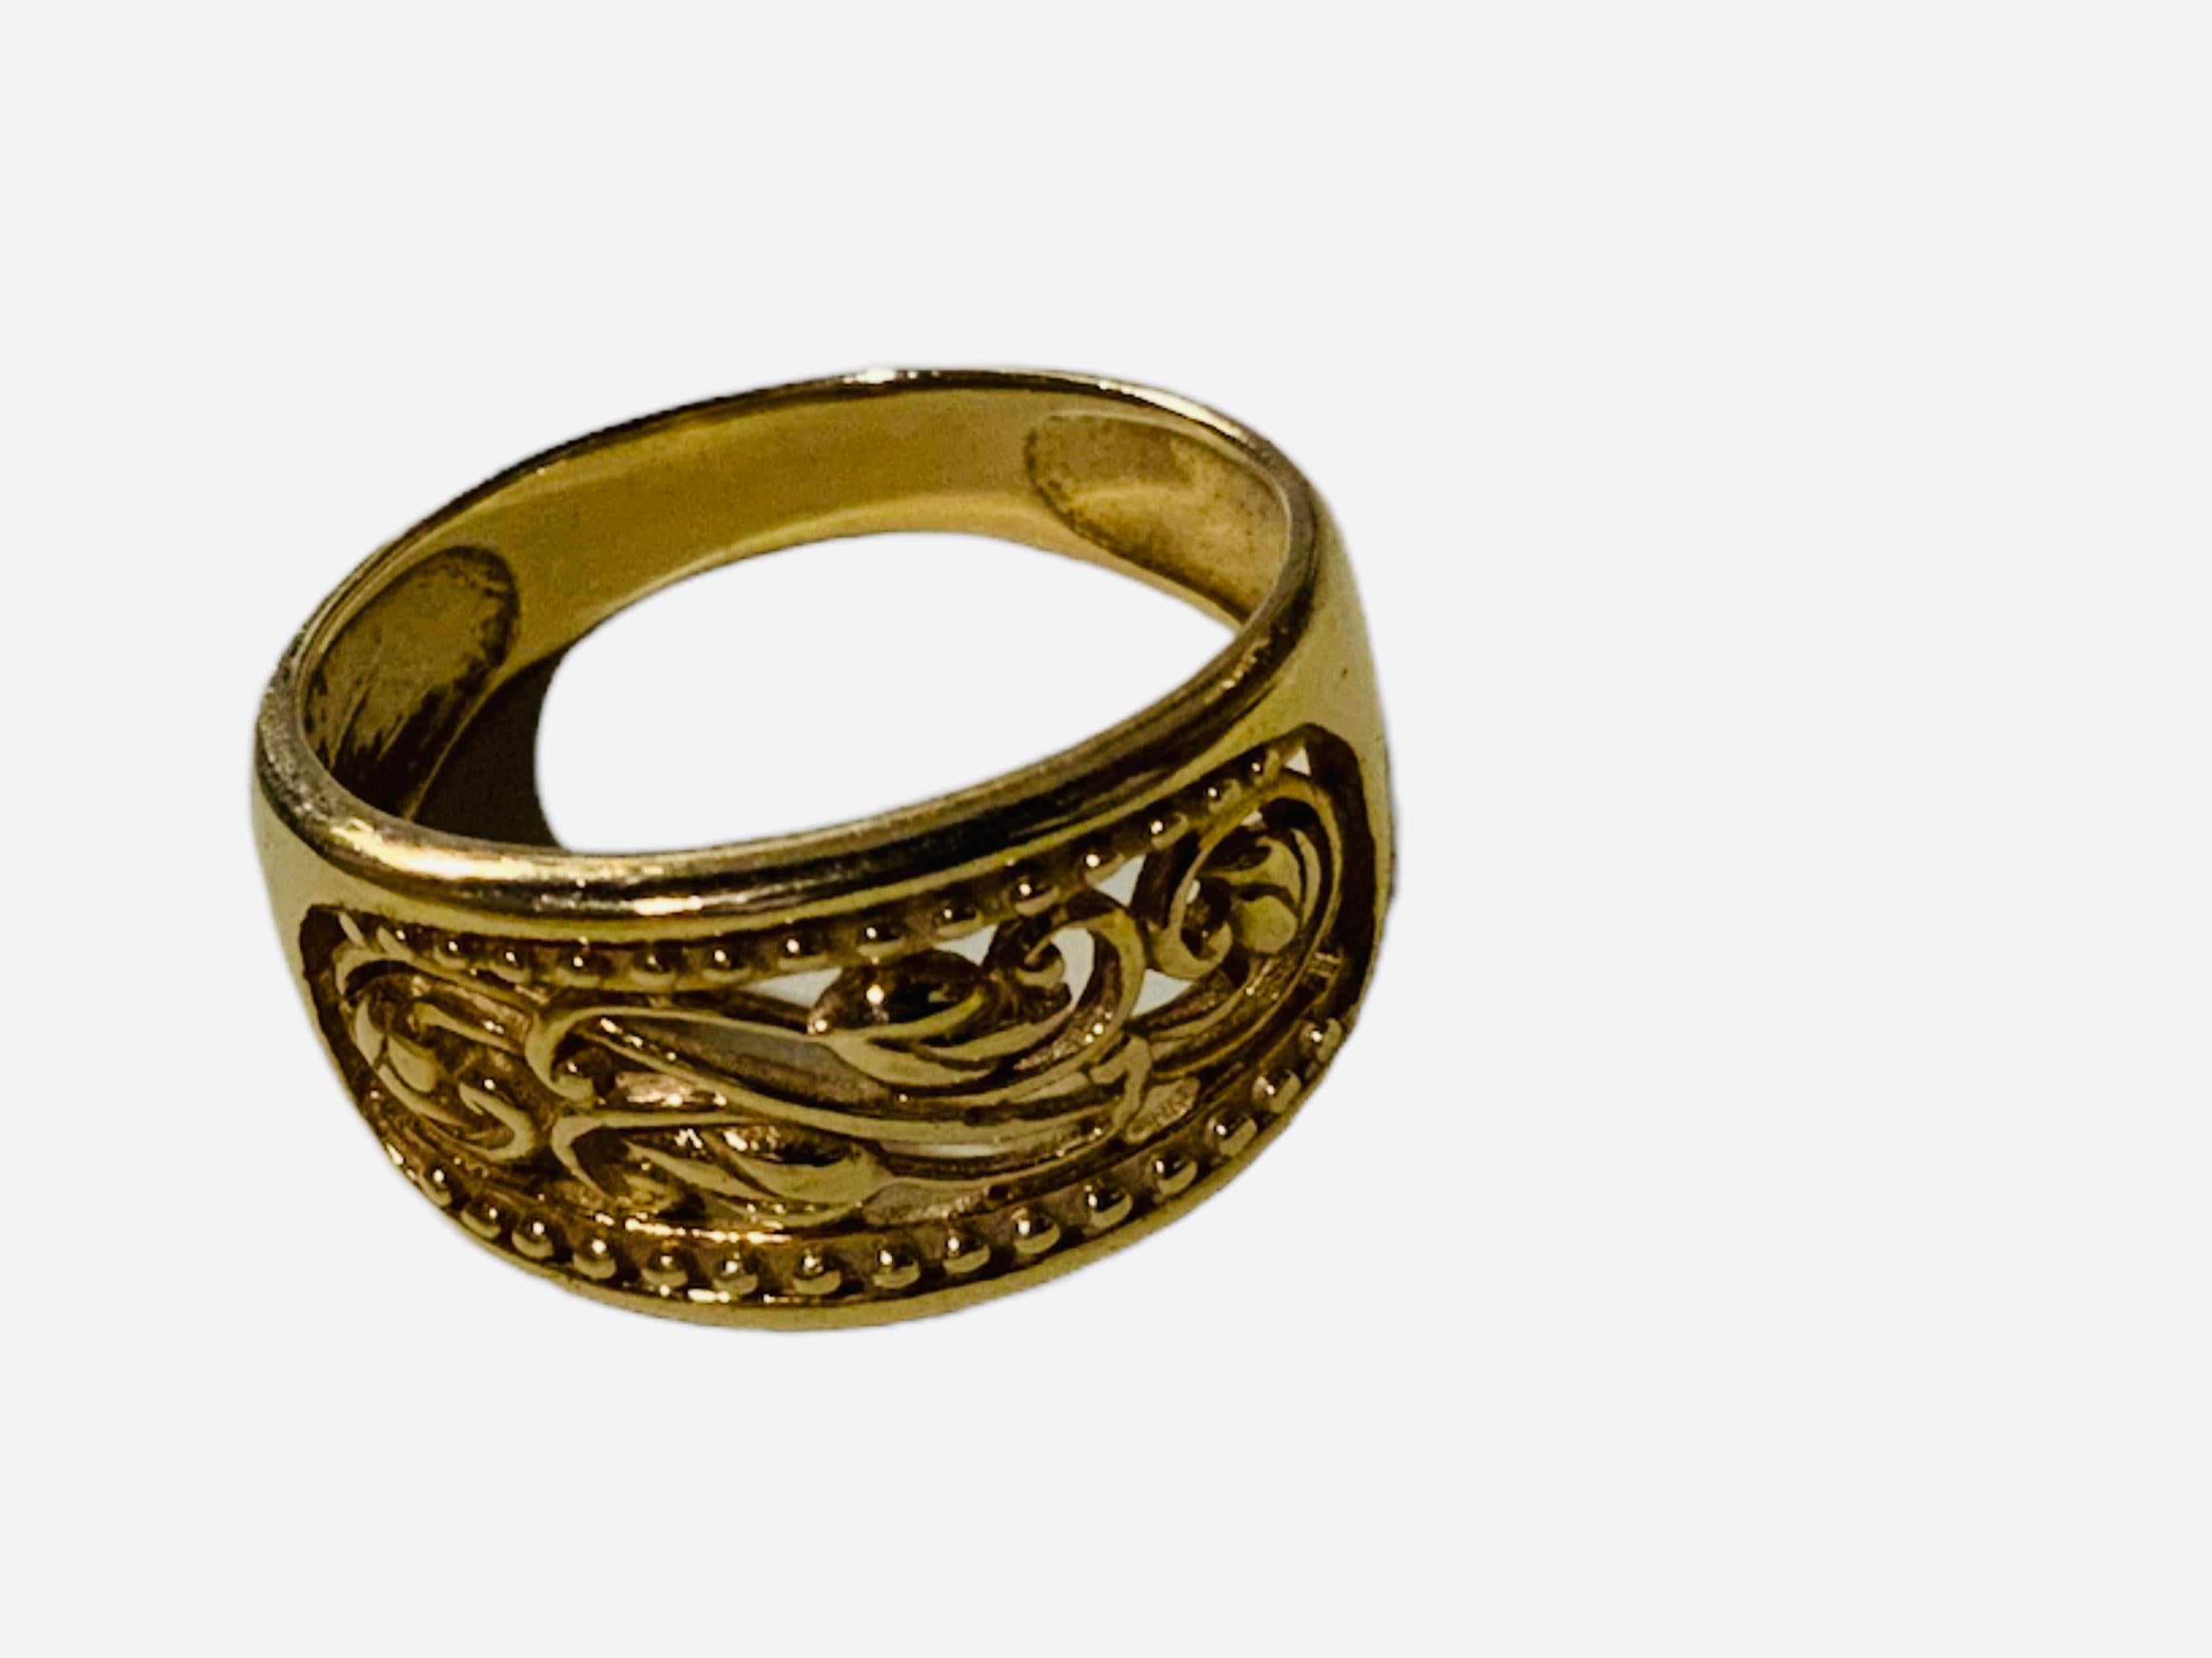 Dies ist ein 18K Goldring aus der Türkei. Es zeigt ein breites Band mit einem durchbrochenen länglichen Zentrum, das mit einigen Blättern von floralen Zweigen und einigen Perlen in Linie umrahmt sie geschmückt ist. Der Ring ist mit AK, Türkei und